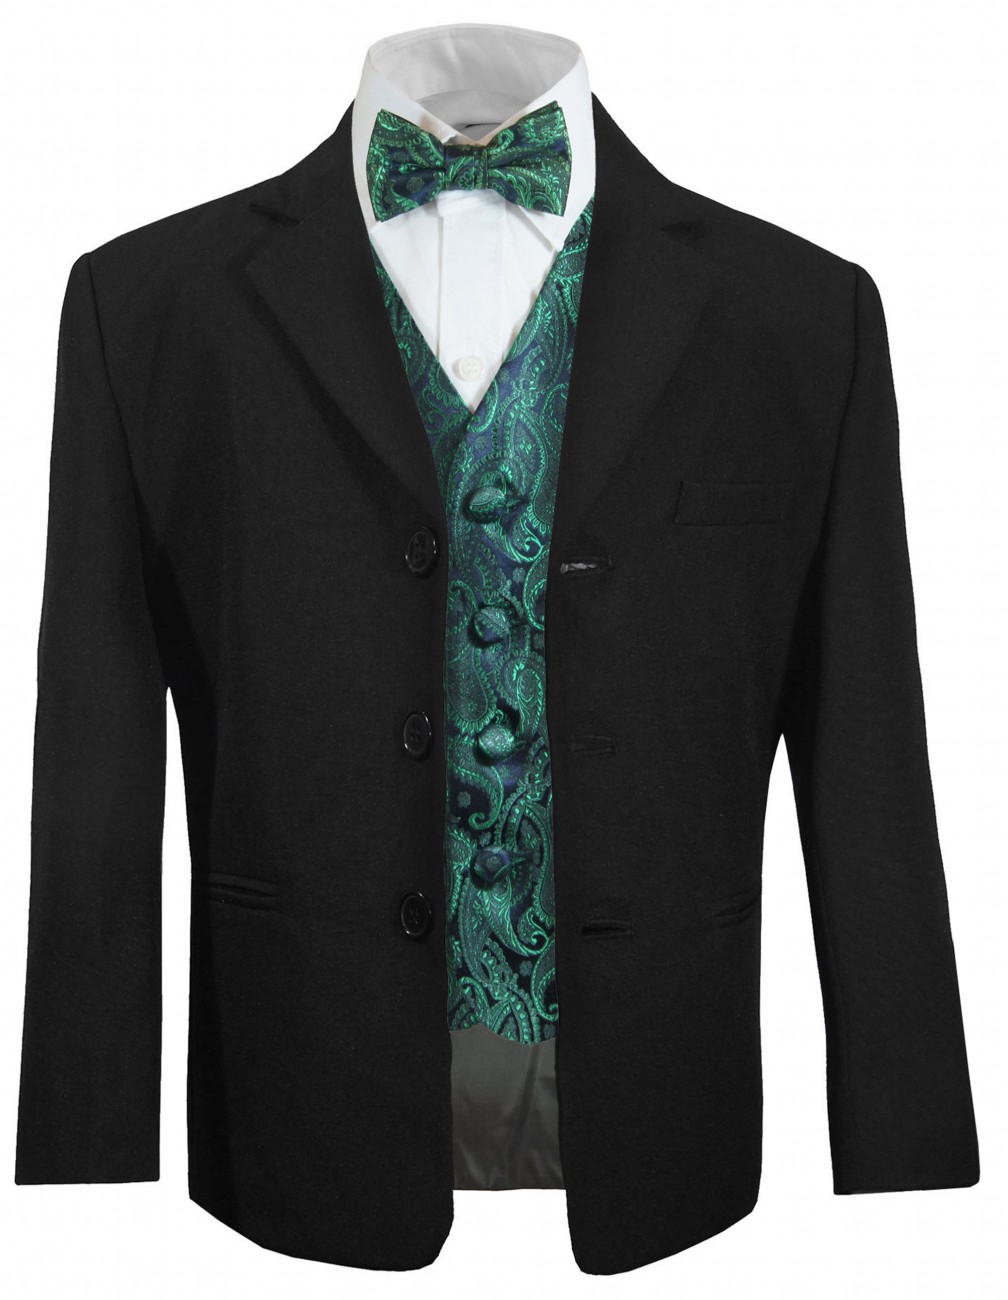 S1 BOY Formal Party Black Tuxedo Suit Turquoise Vest & Tie 2 3 4 6 7 8 10 12 14 